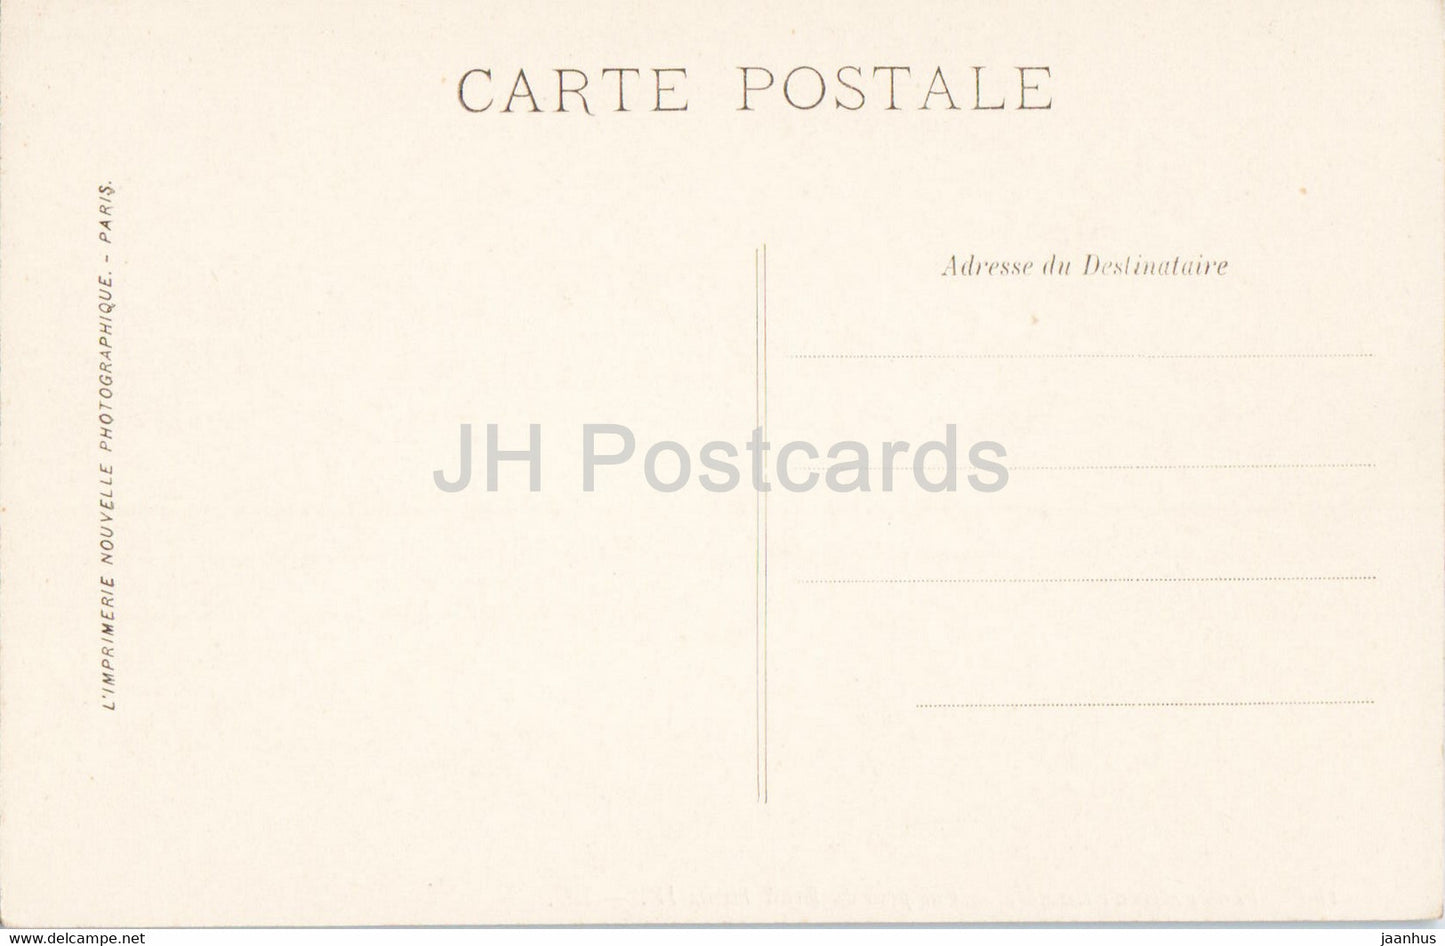 Fontainebleau - Vue prise du Mail Henri IV - 180 - carte postale ancienne - France - inutilisée